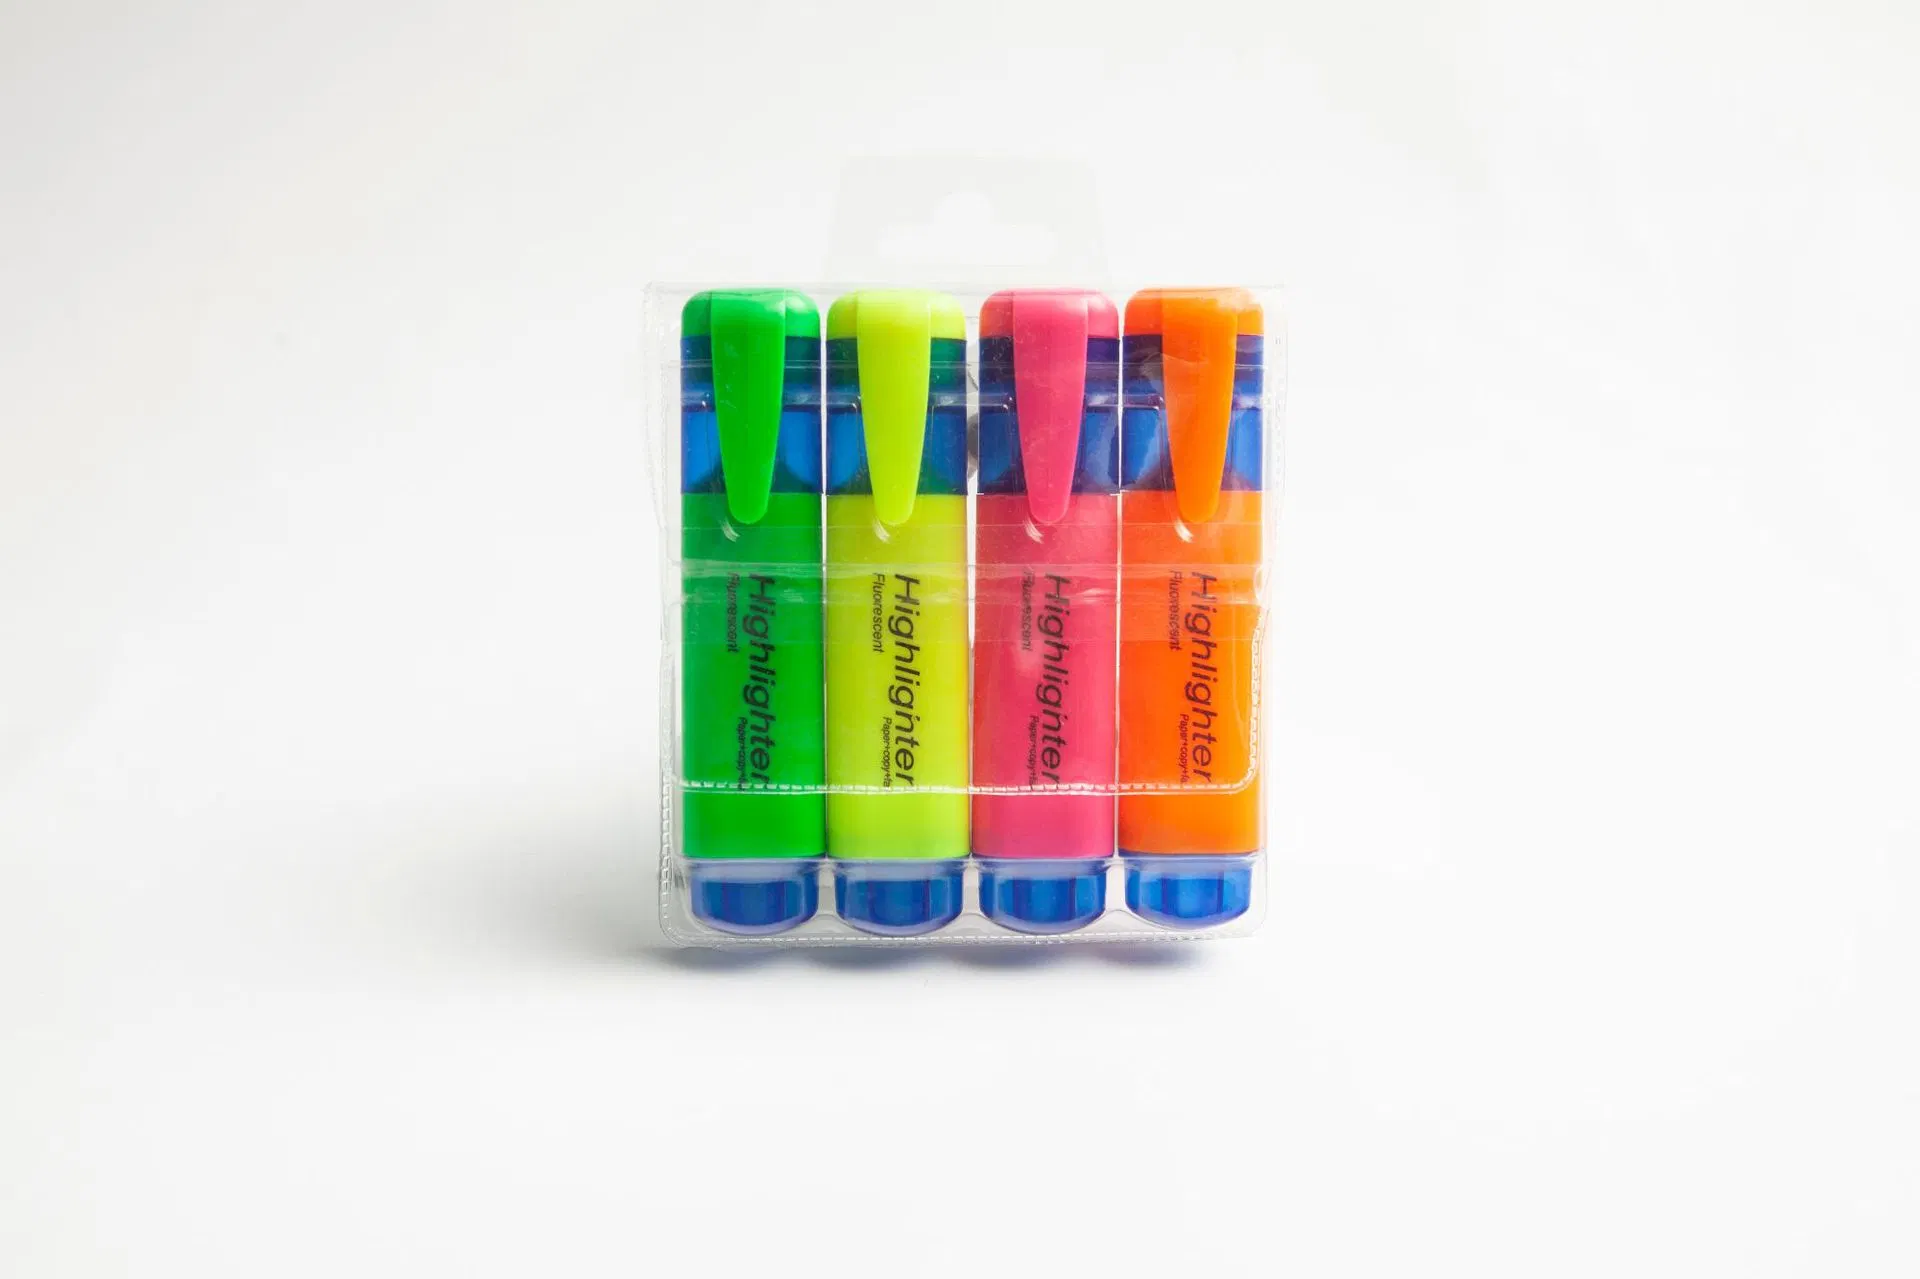 Ponta do cinzel Highlighters fluorescente, Dry-Quickly Non-Toxic marcadores de marca-texto, Depósito Highlighters, sortido, 3 cores/Pack, material escolar